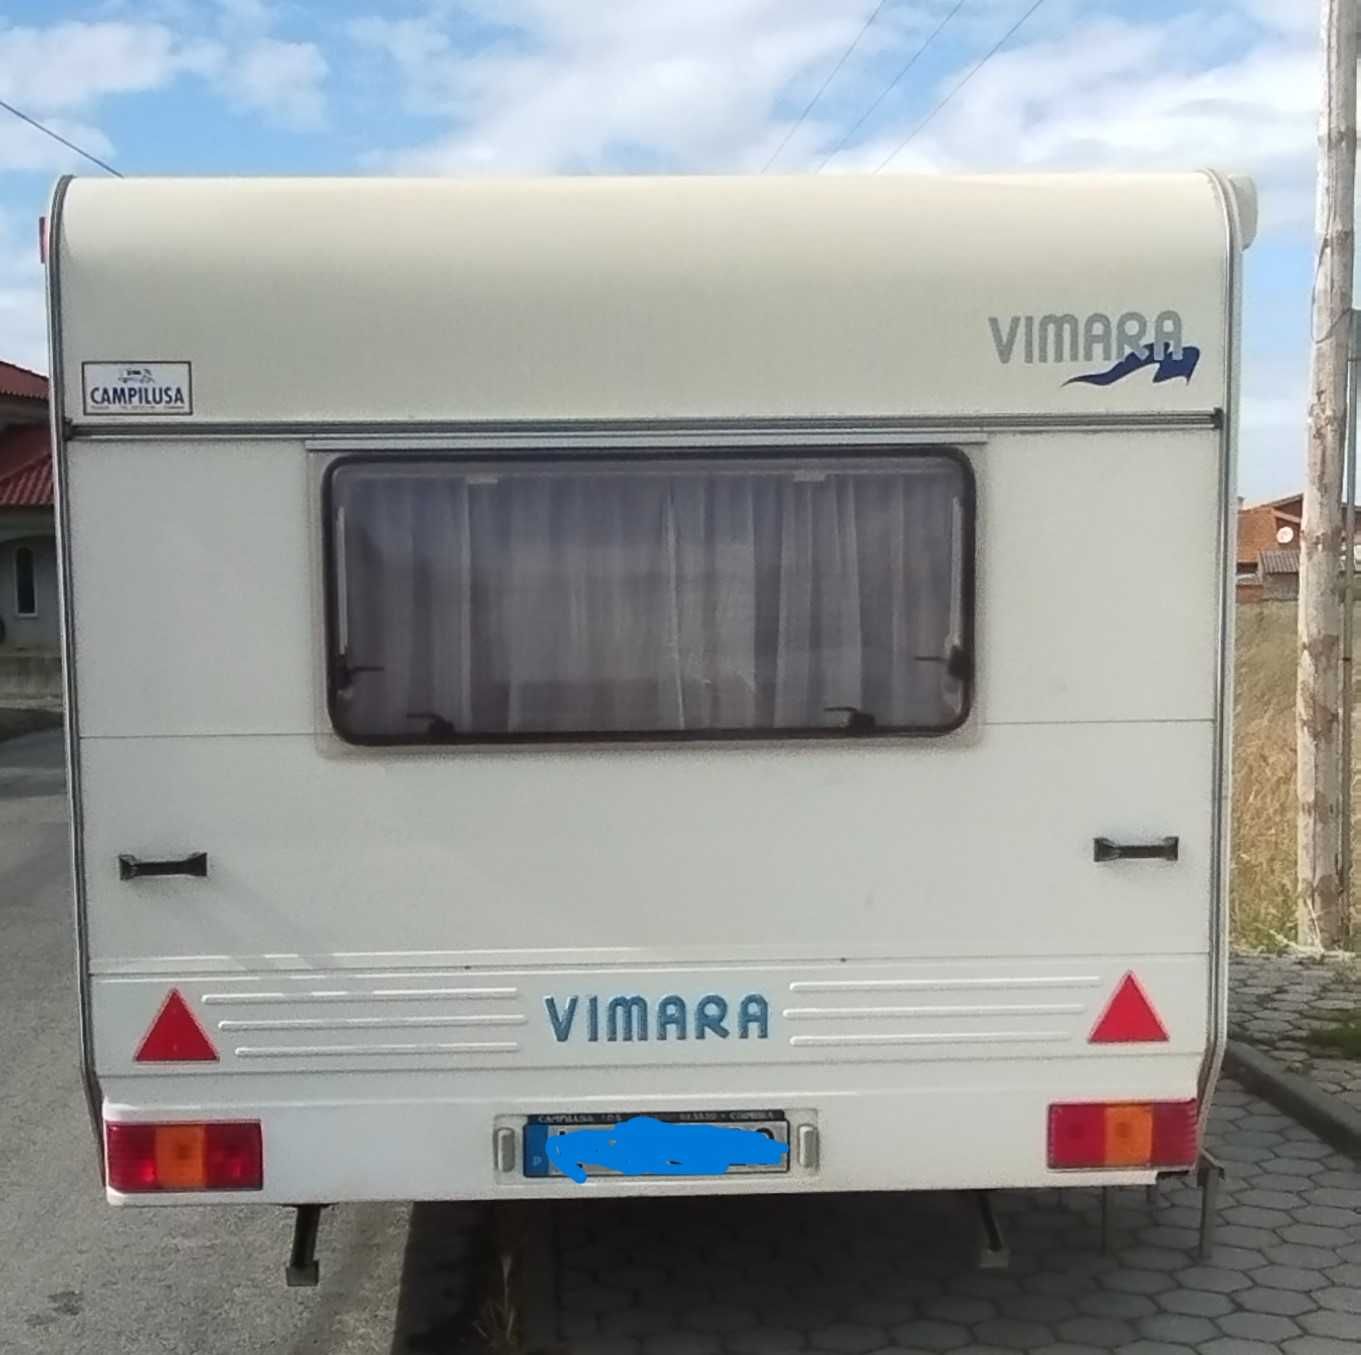 Caravana Vimara Deluxe 440D